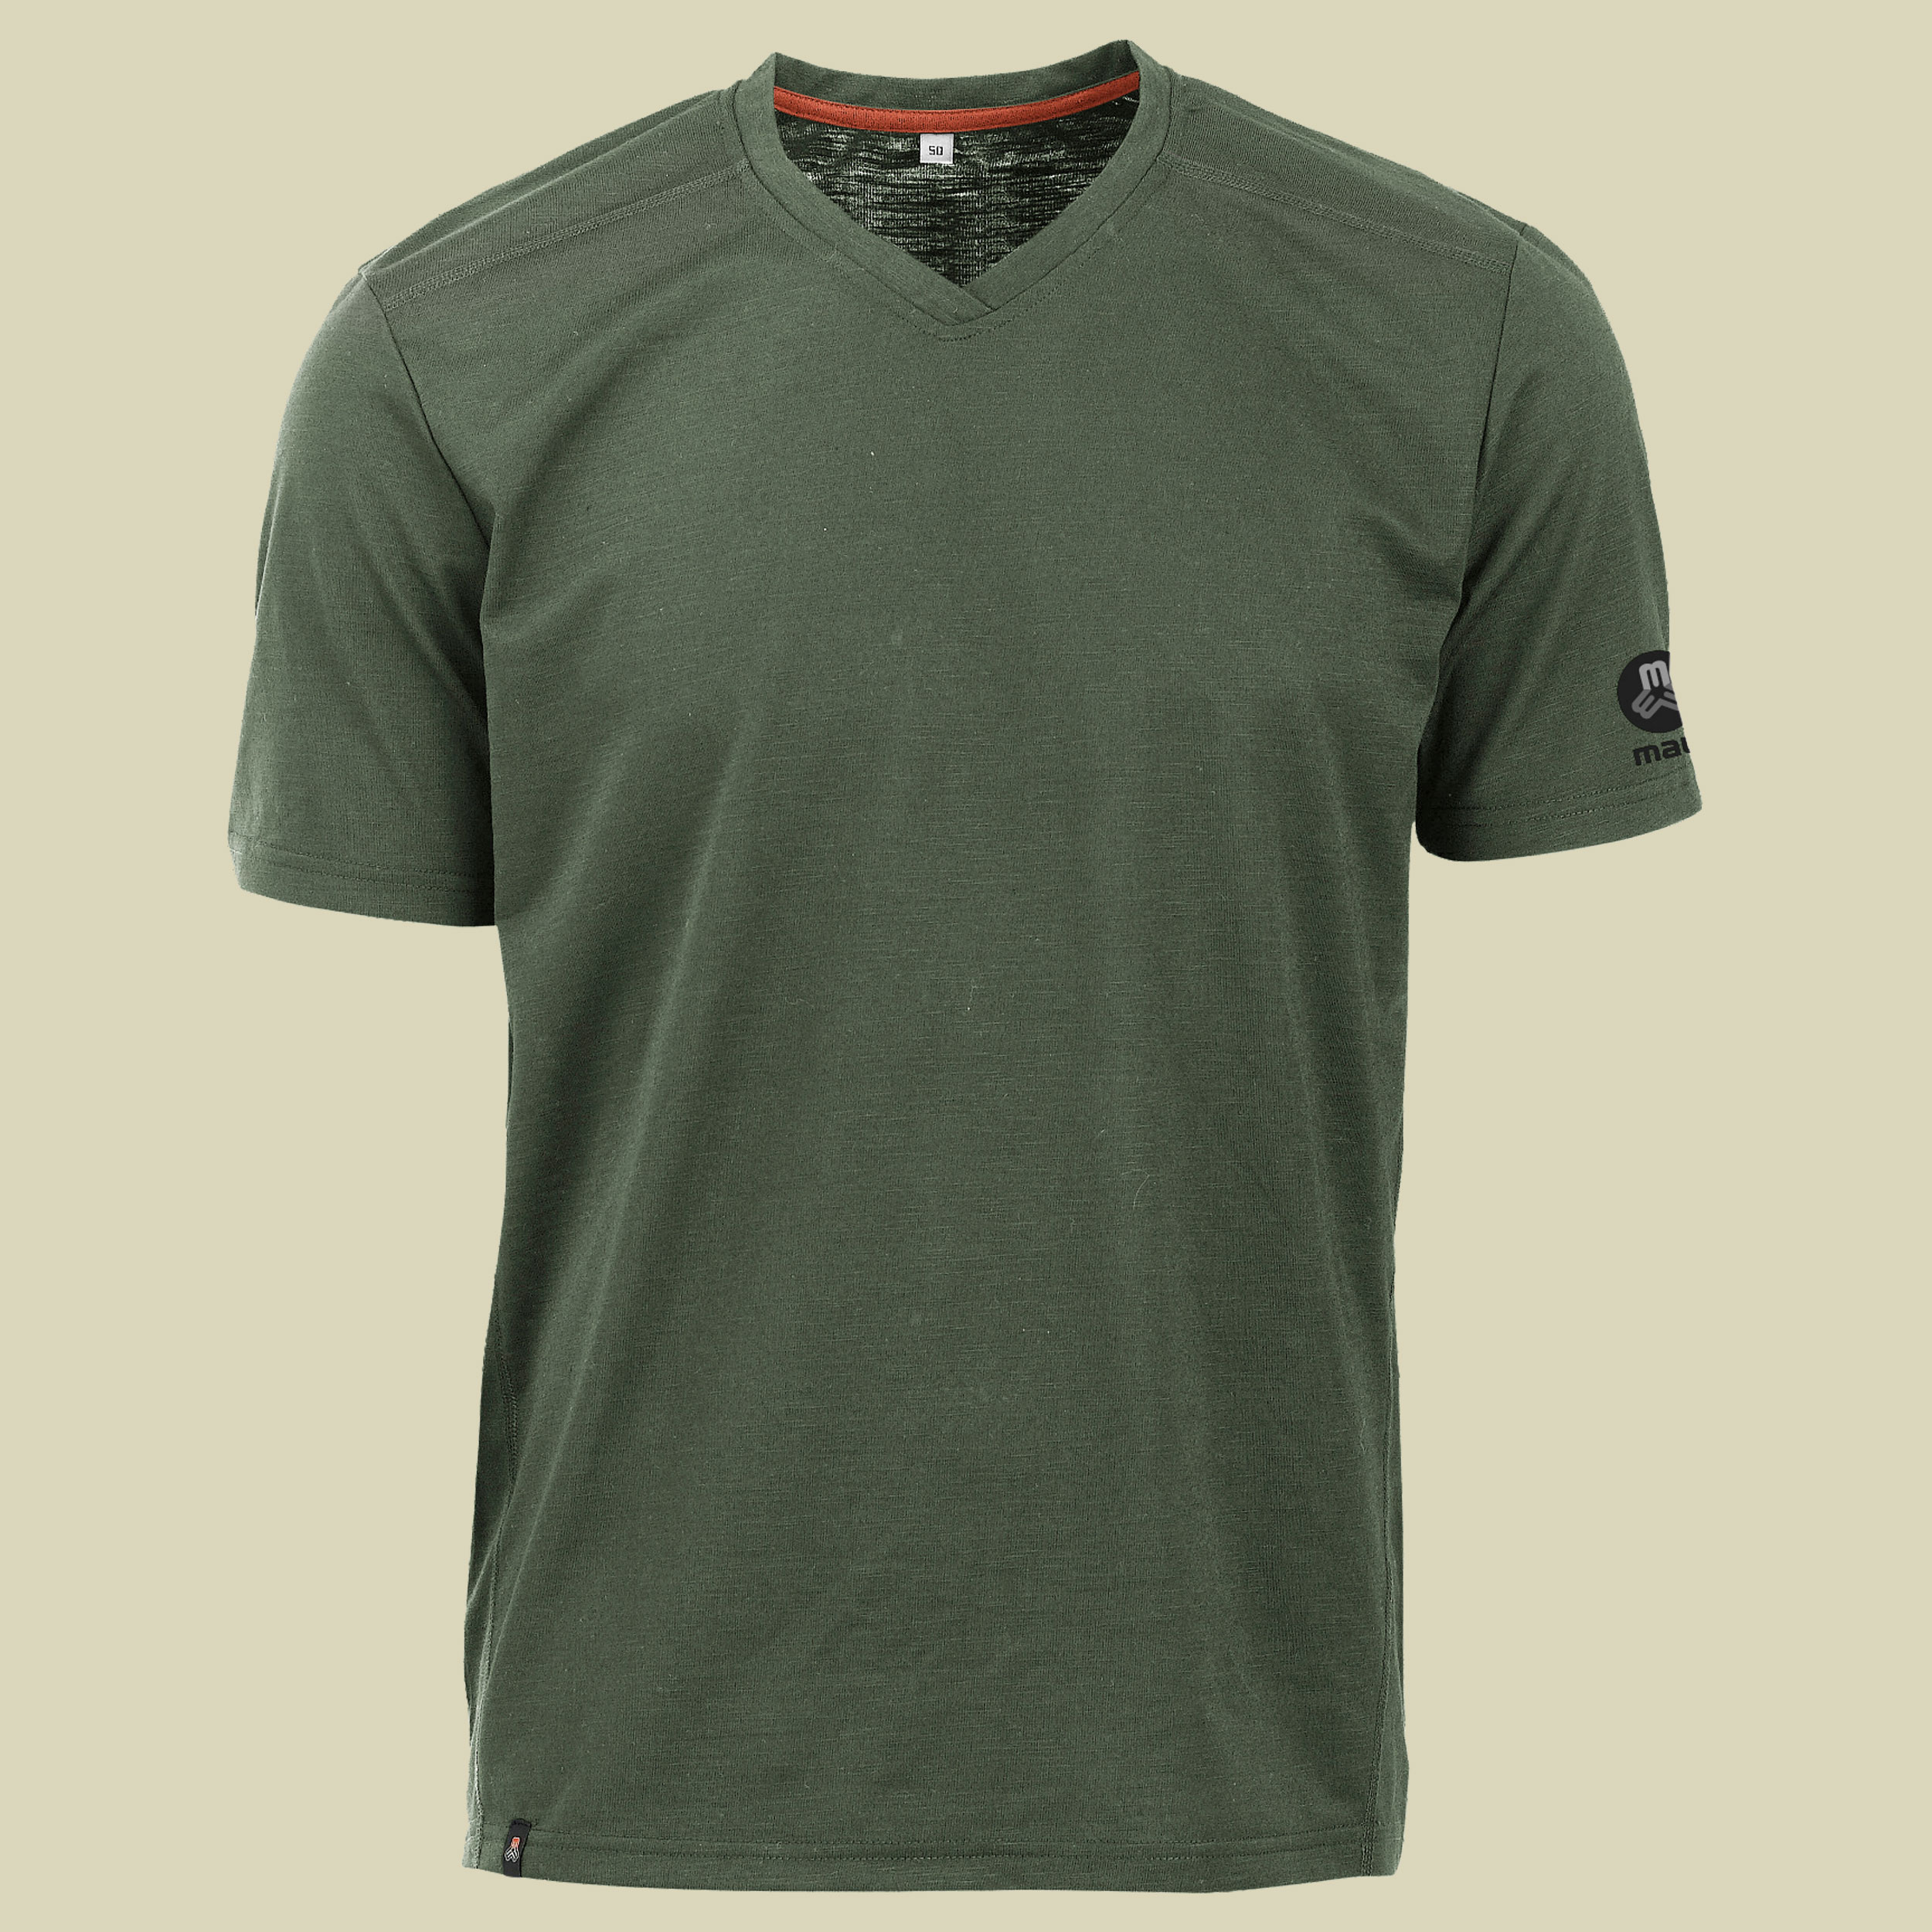 Mike fresh-1/2 T-Shirt Men Größe 54 Farbe grün